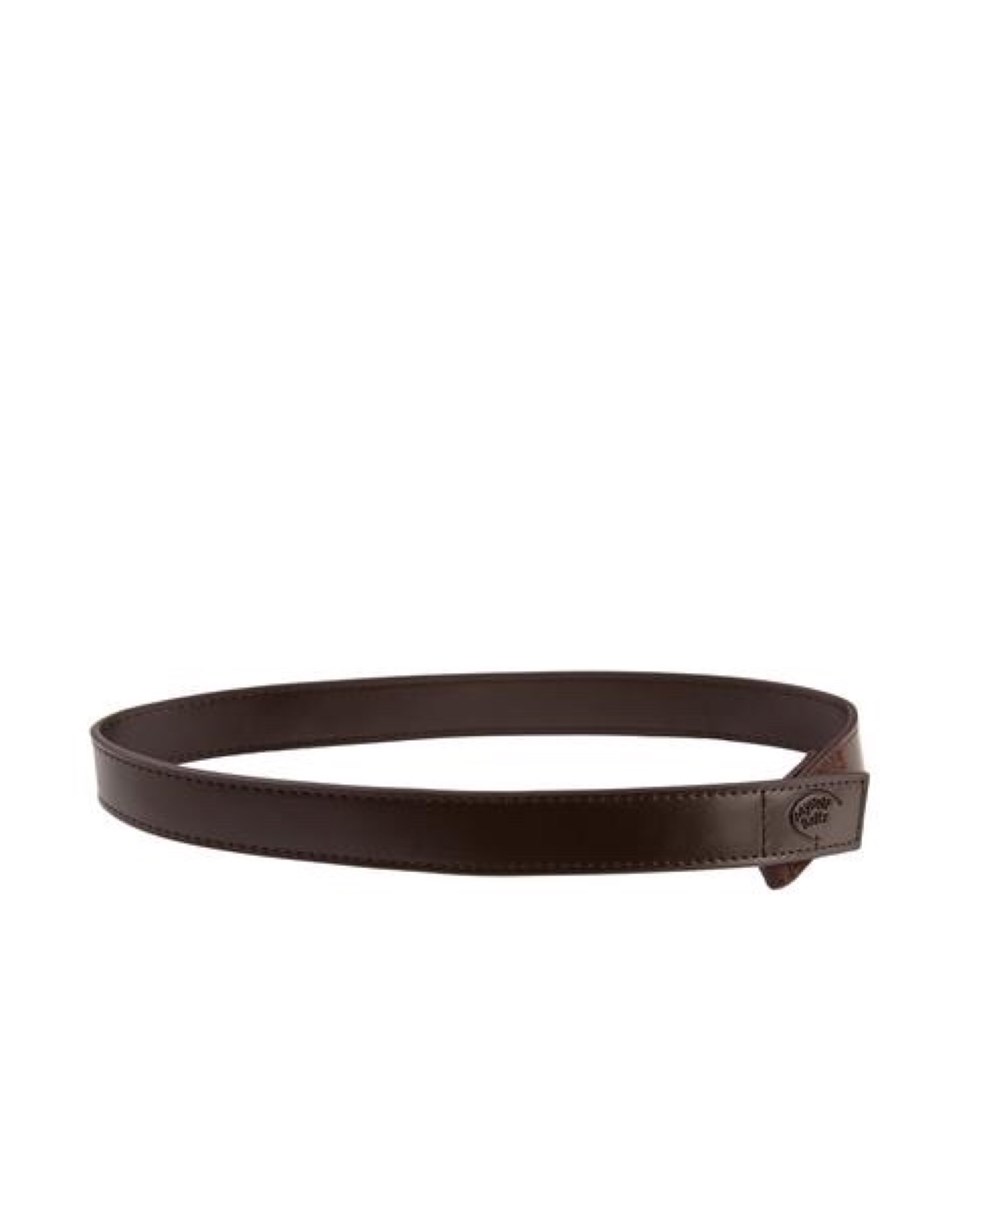 Myself Belts - Leather Belt (Dark Brown) 